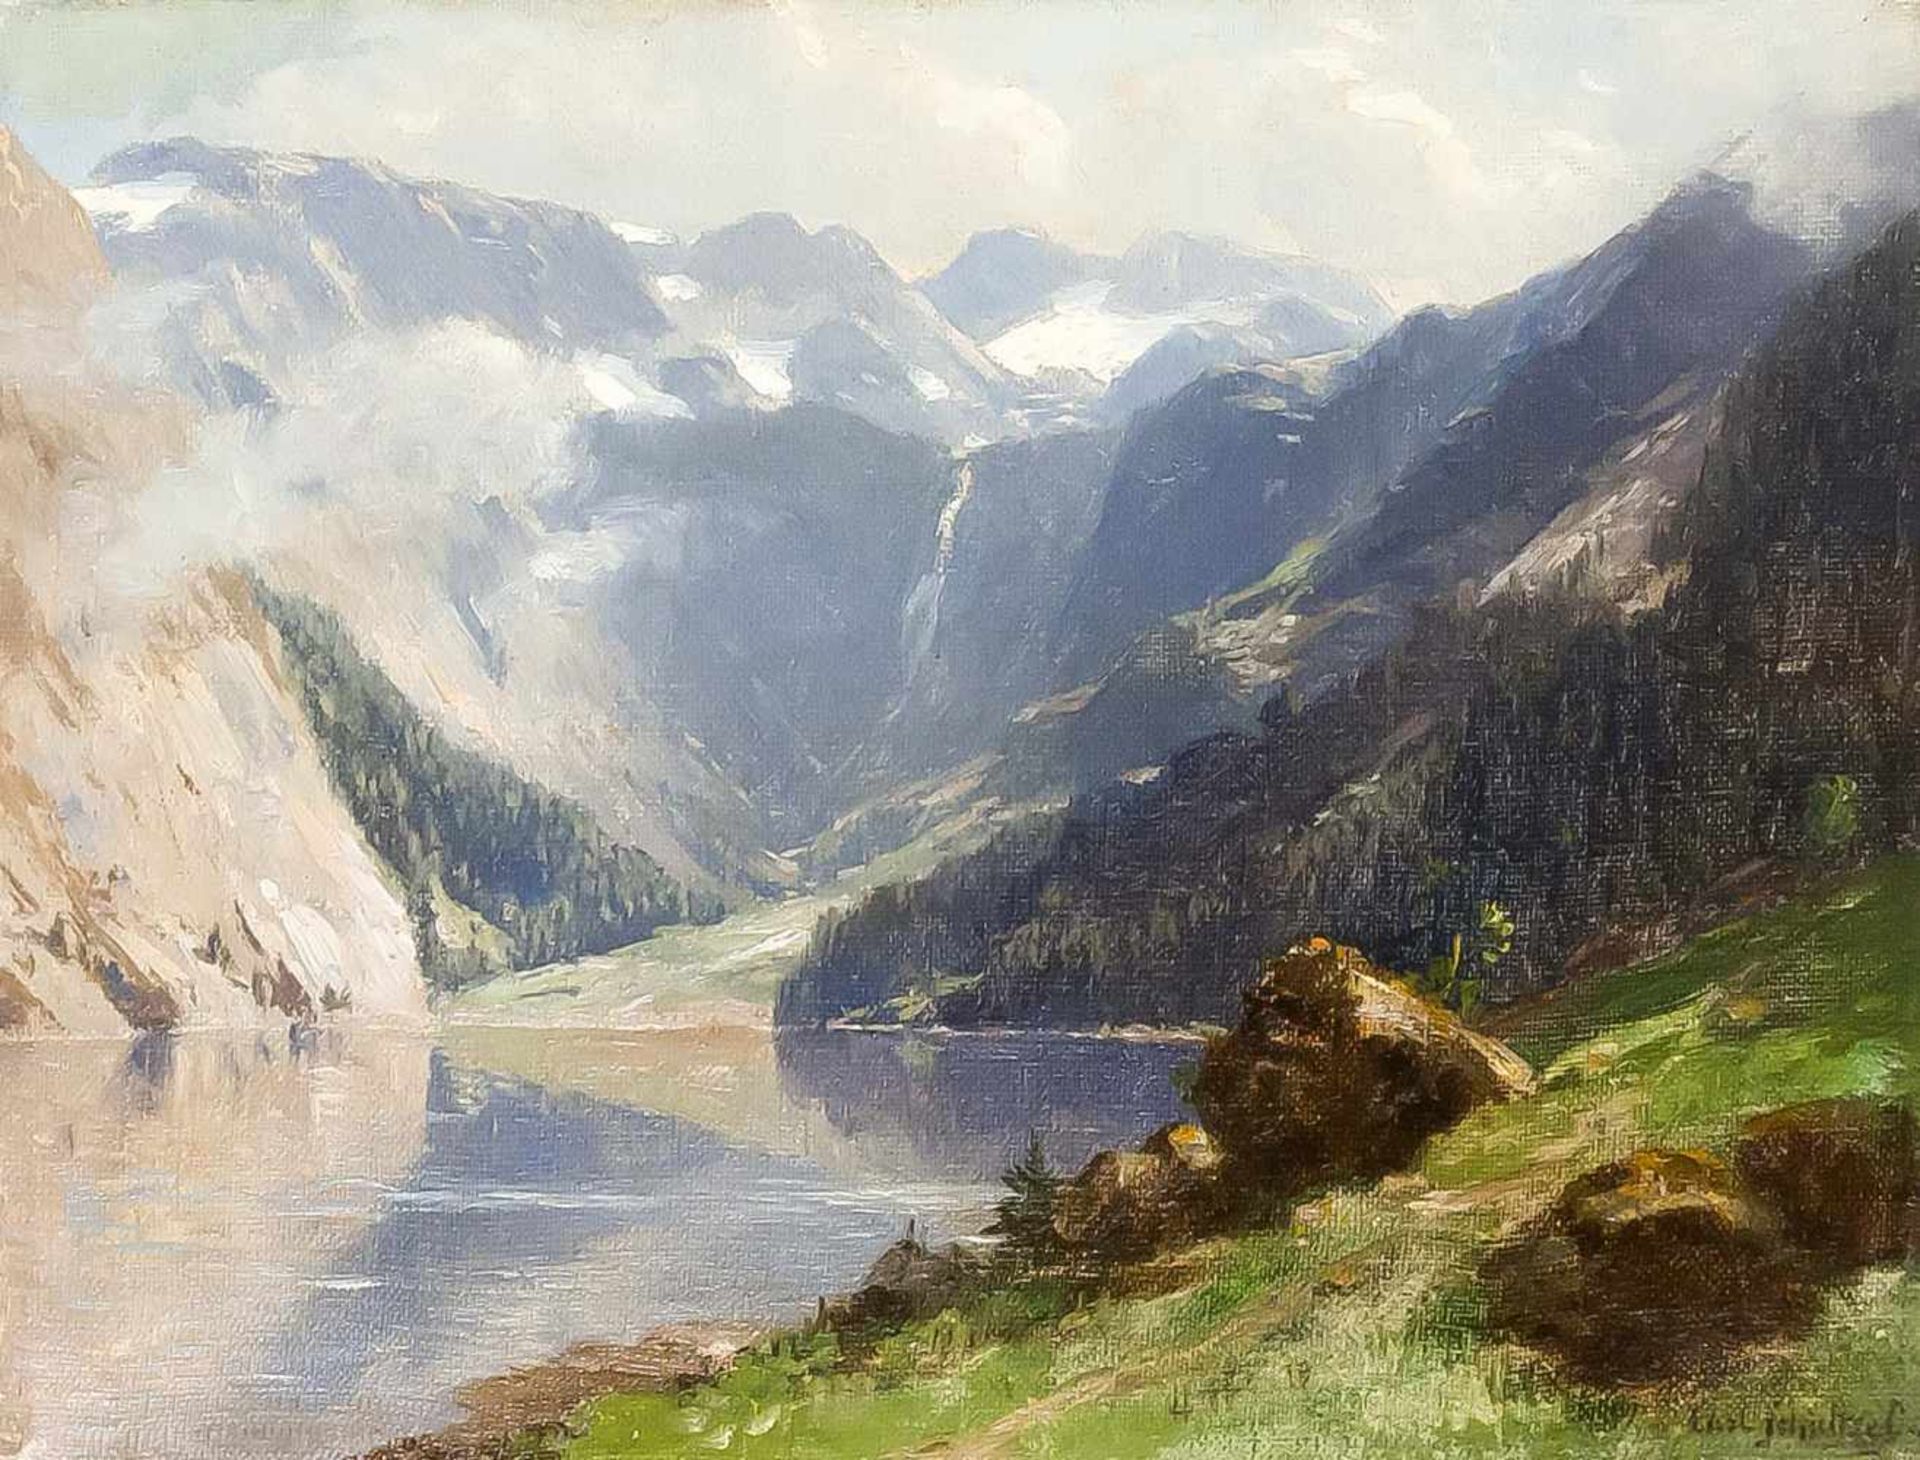 Karl Schultze (1856-1935), Düsseldorfer Landschaftsmaler, studierte zunächst in Dresden,ehe er